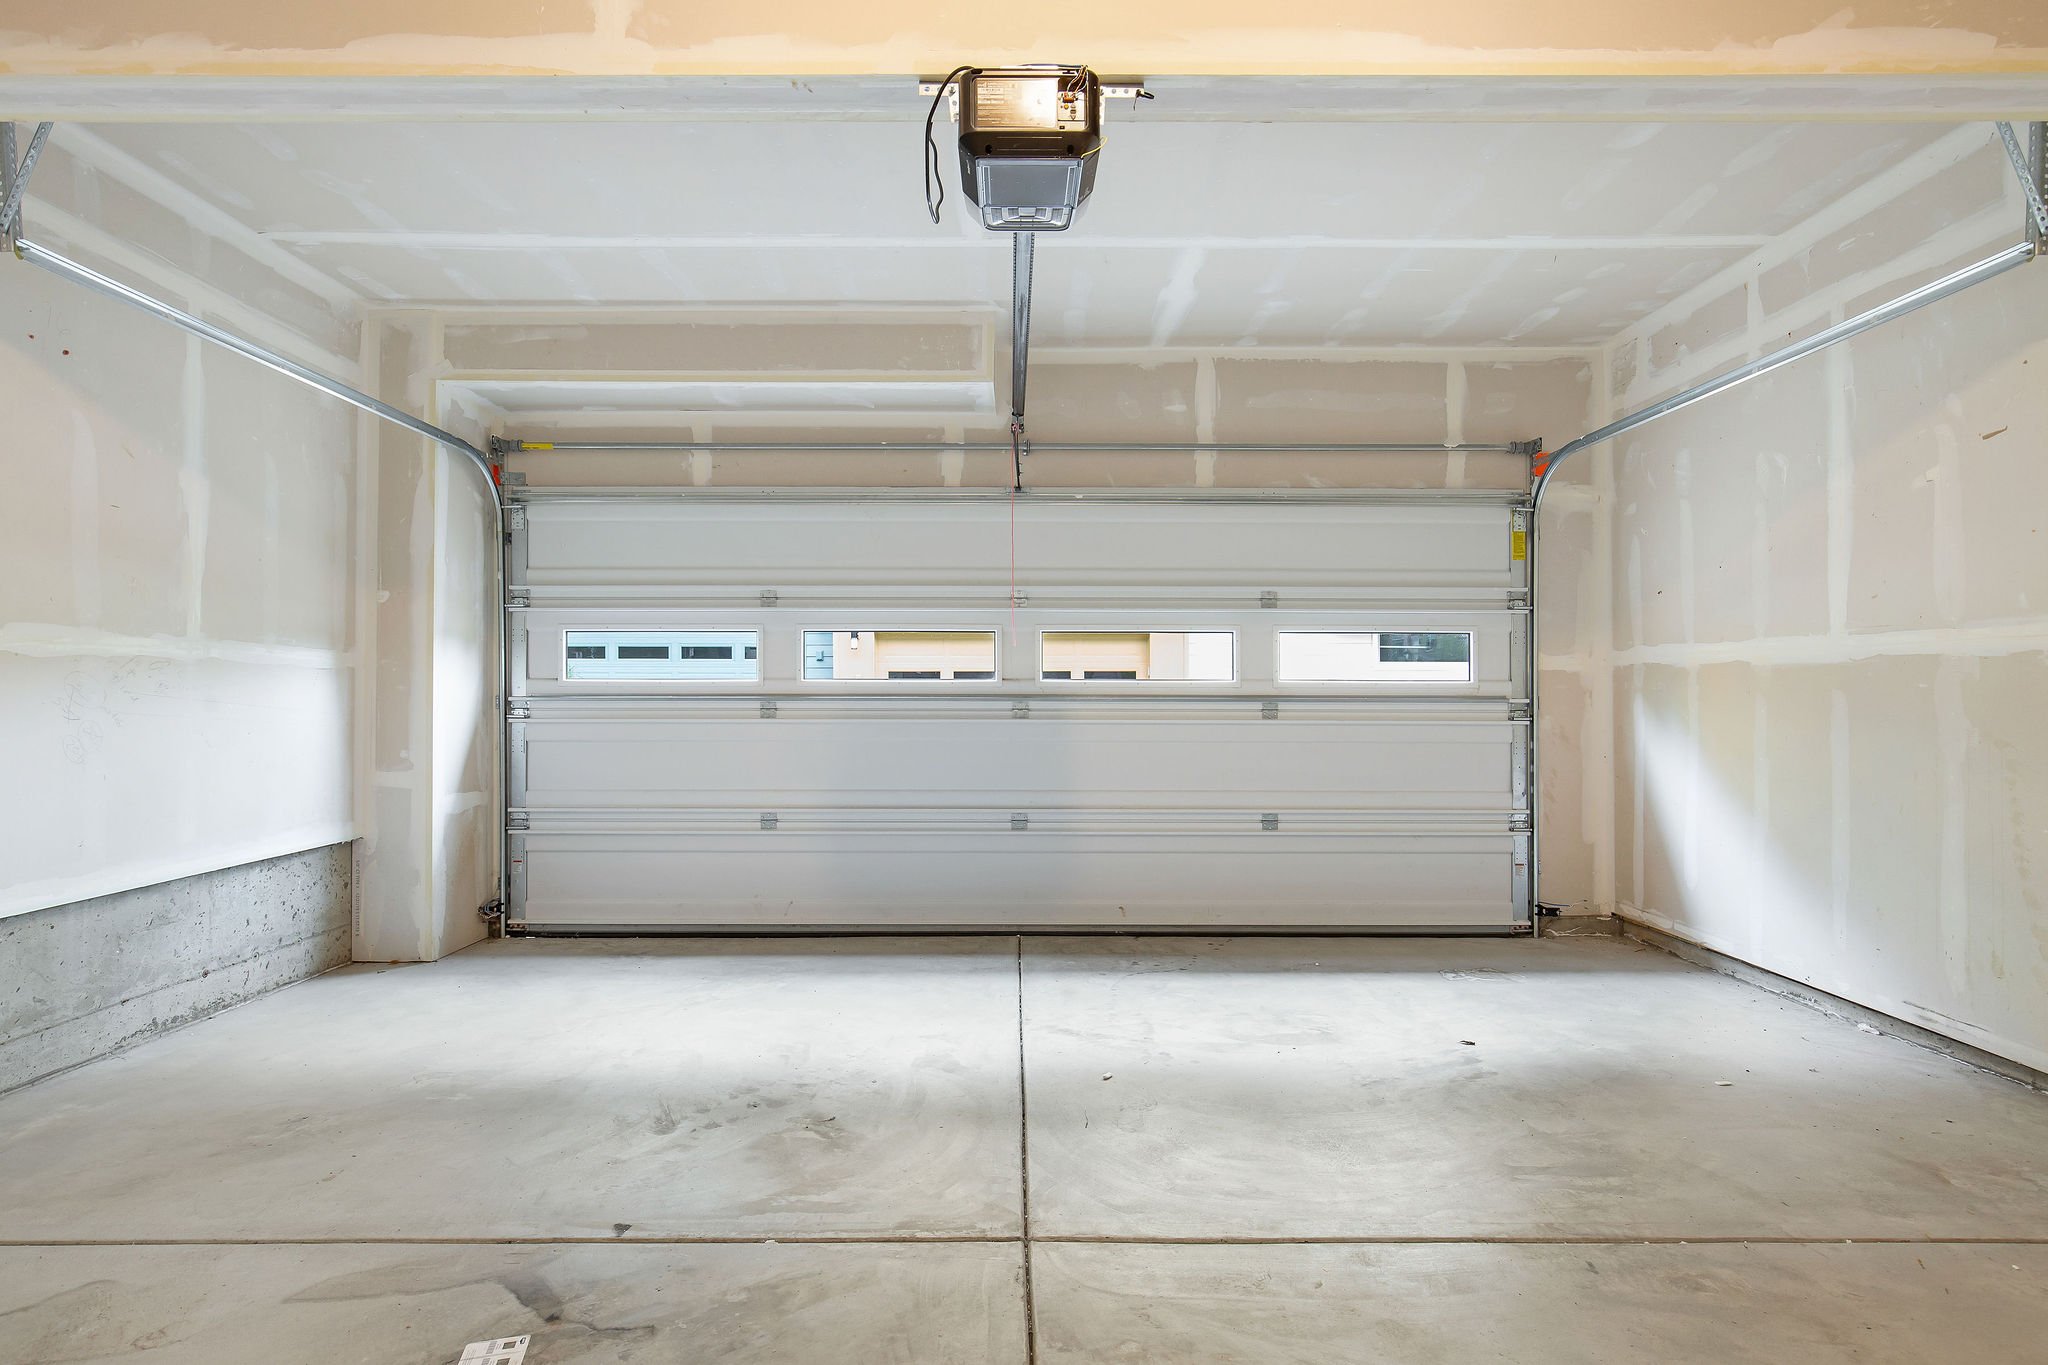  image description: interior of garage  